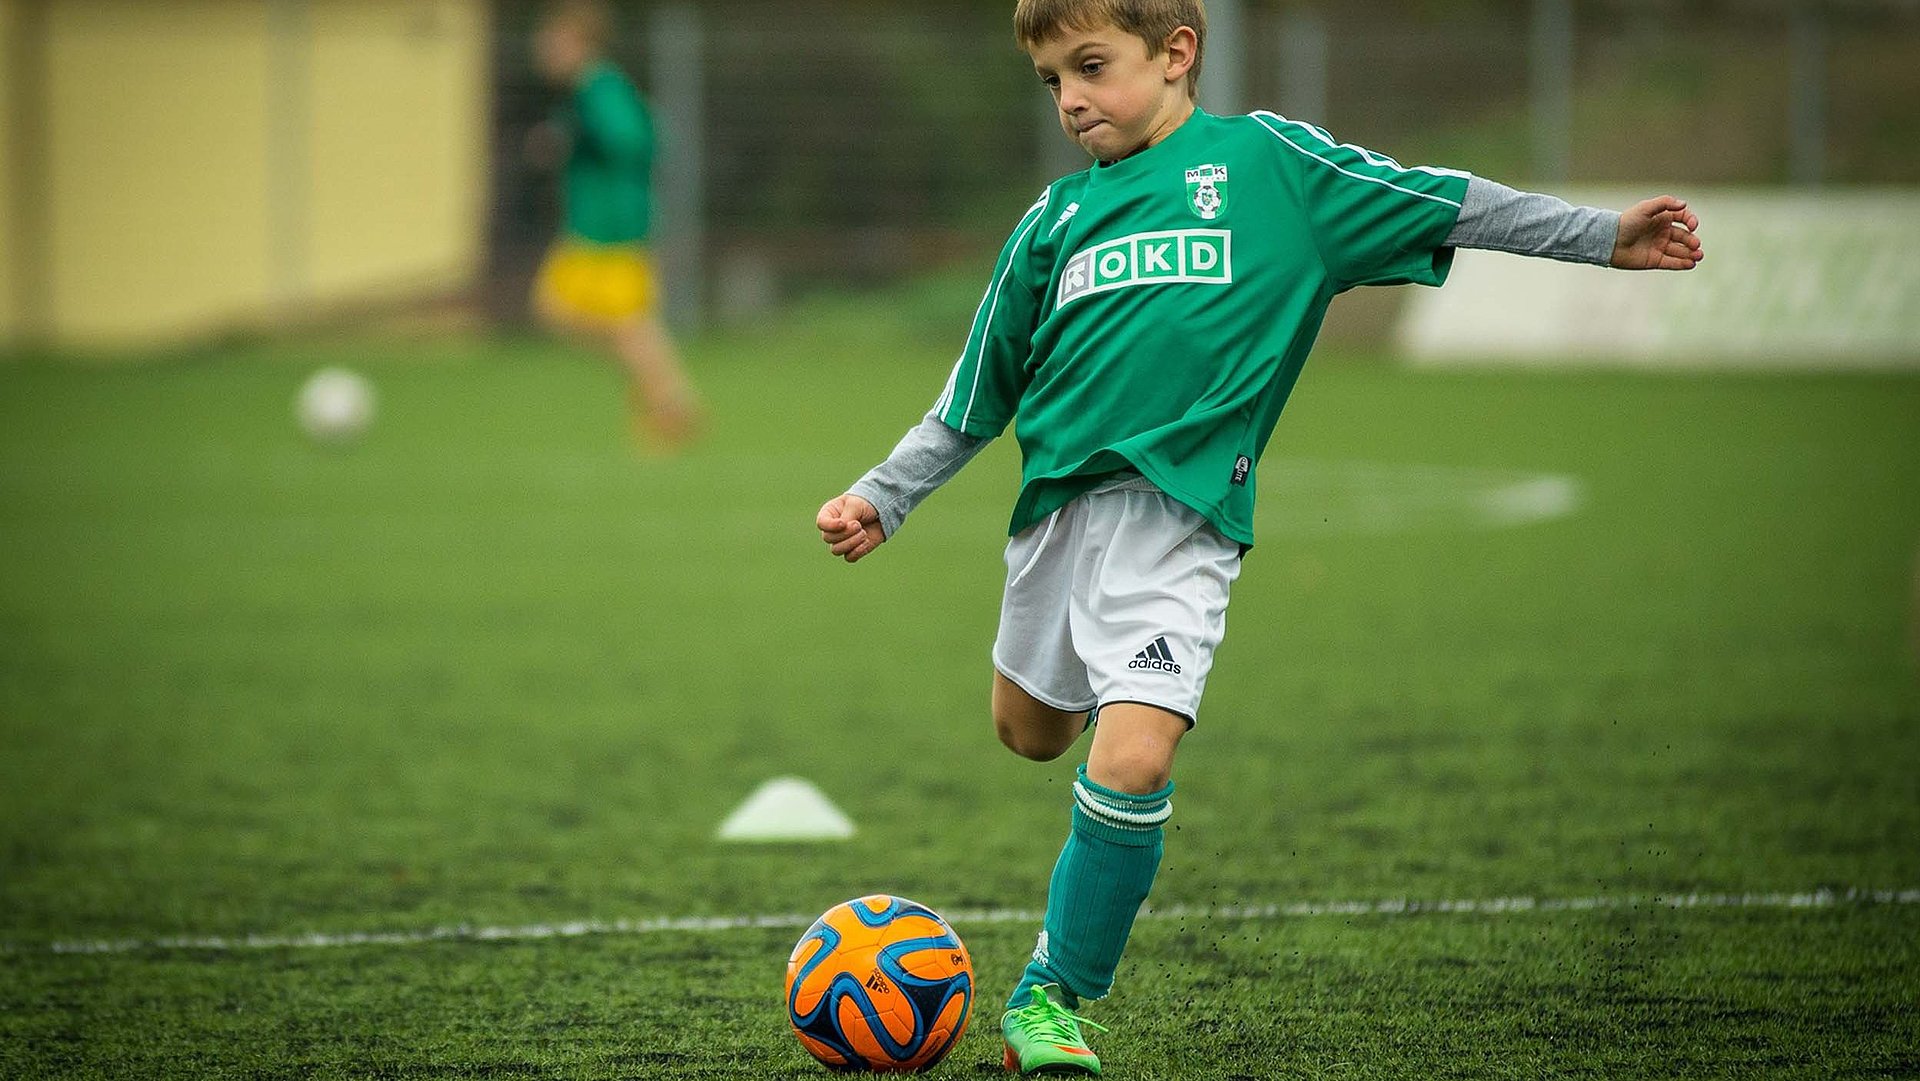 Kinderfreundliche Unterkünfte im Ostallgäu - kleiner Junge in Fußballausrüstung setzt zum Schuss an